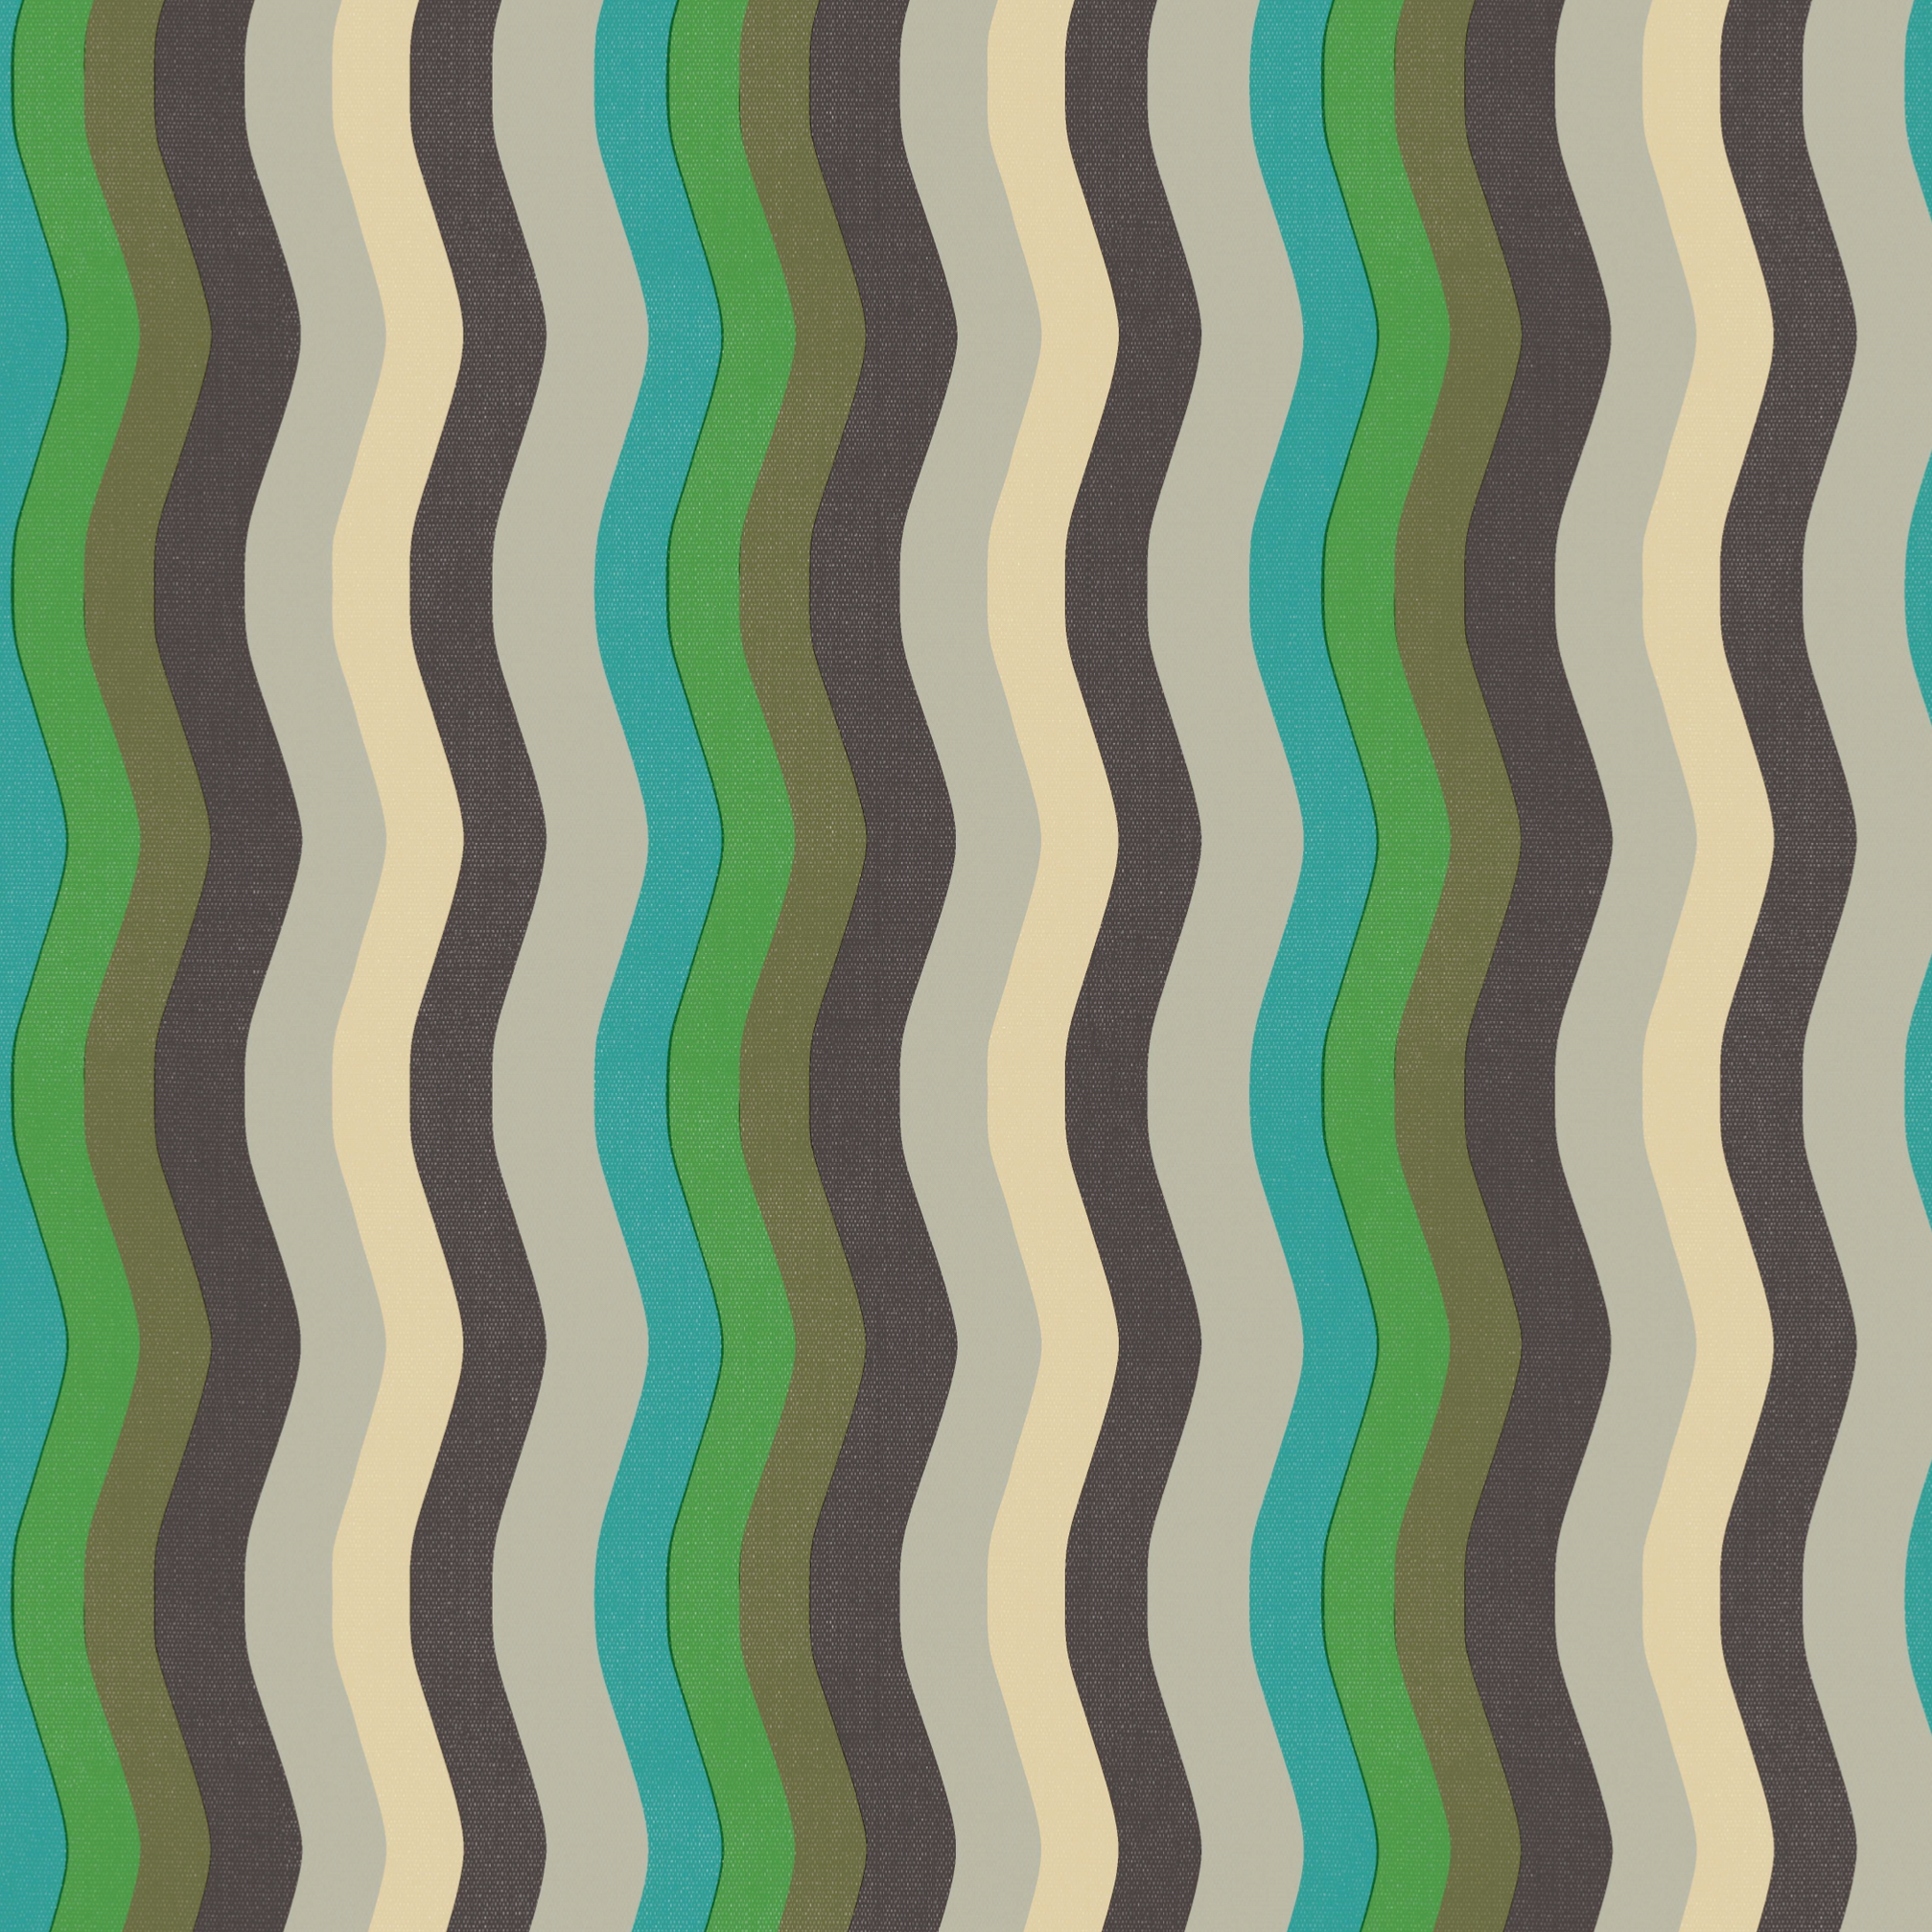 Wavy Stripe Wallpaper - Turquoise, Emerald + Mocha